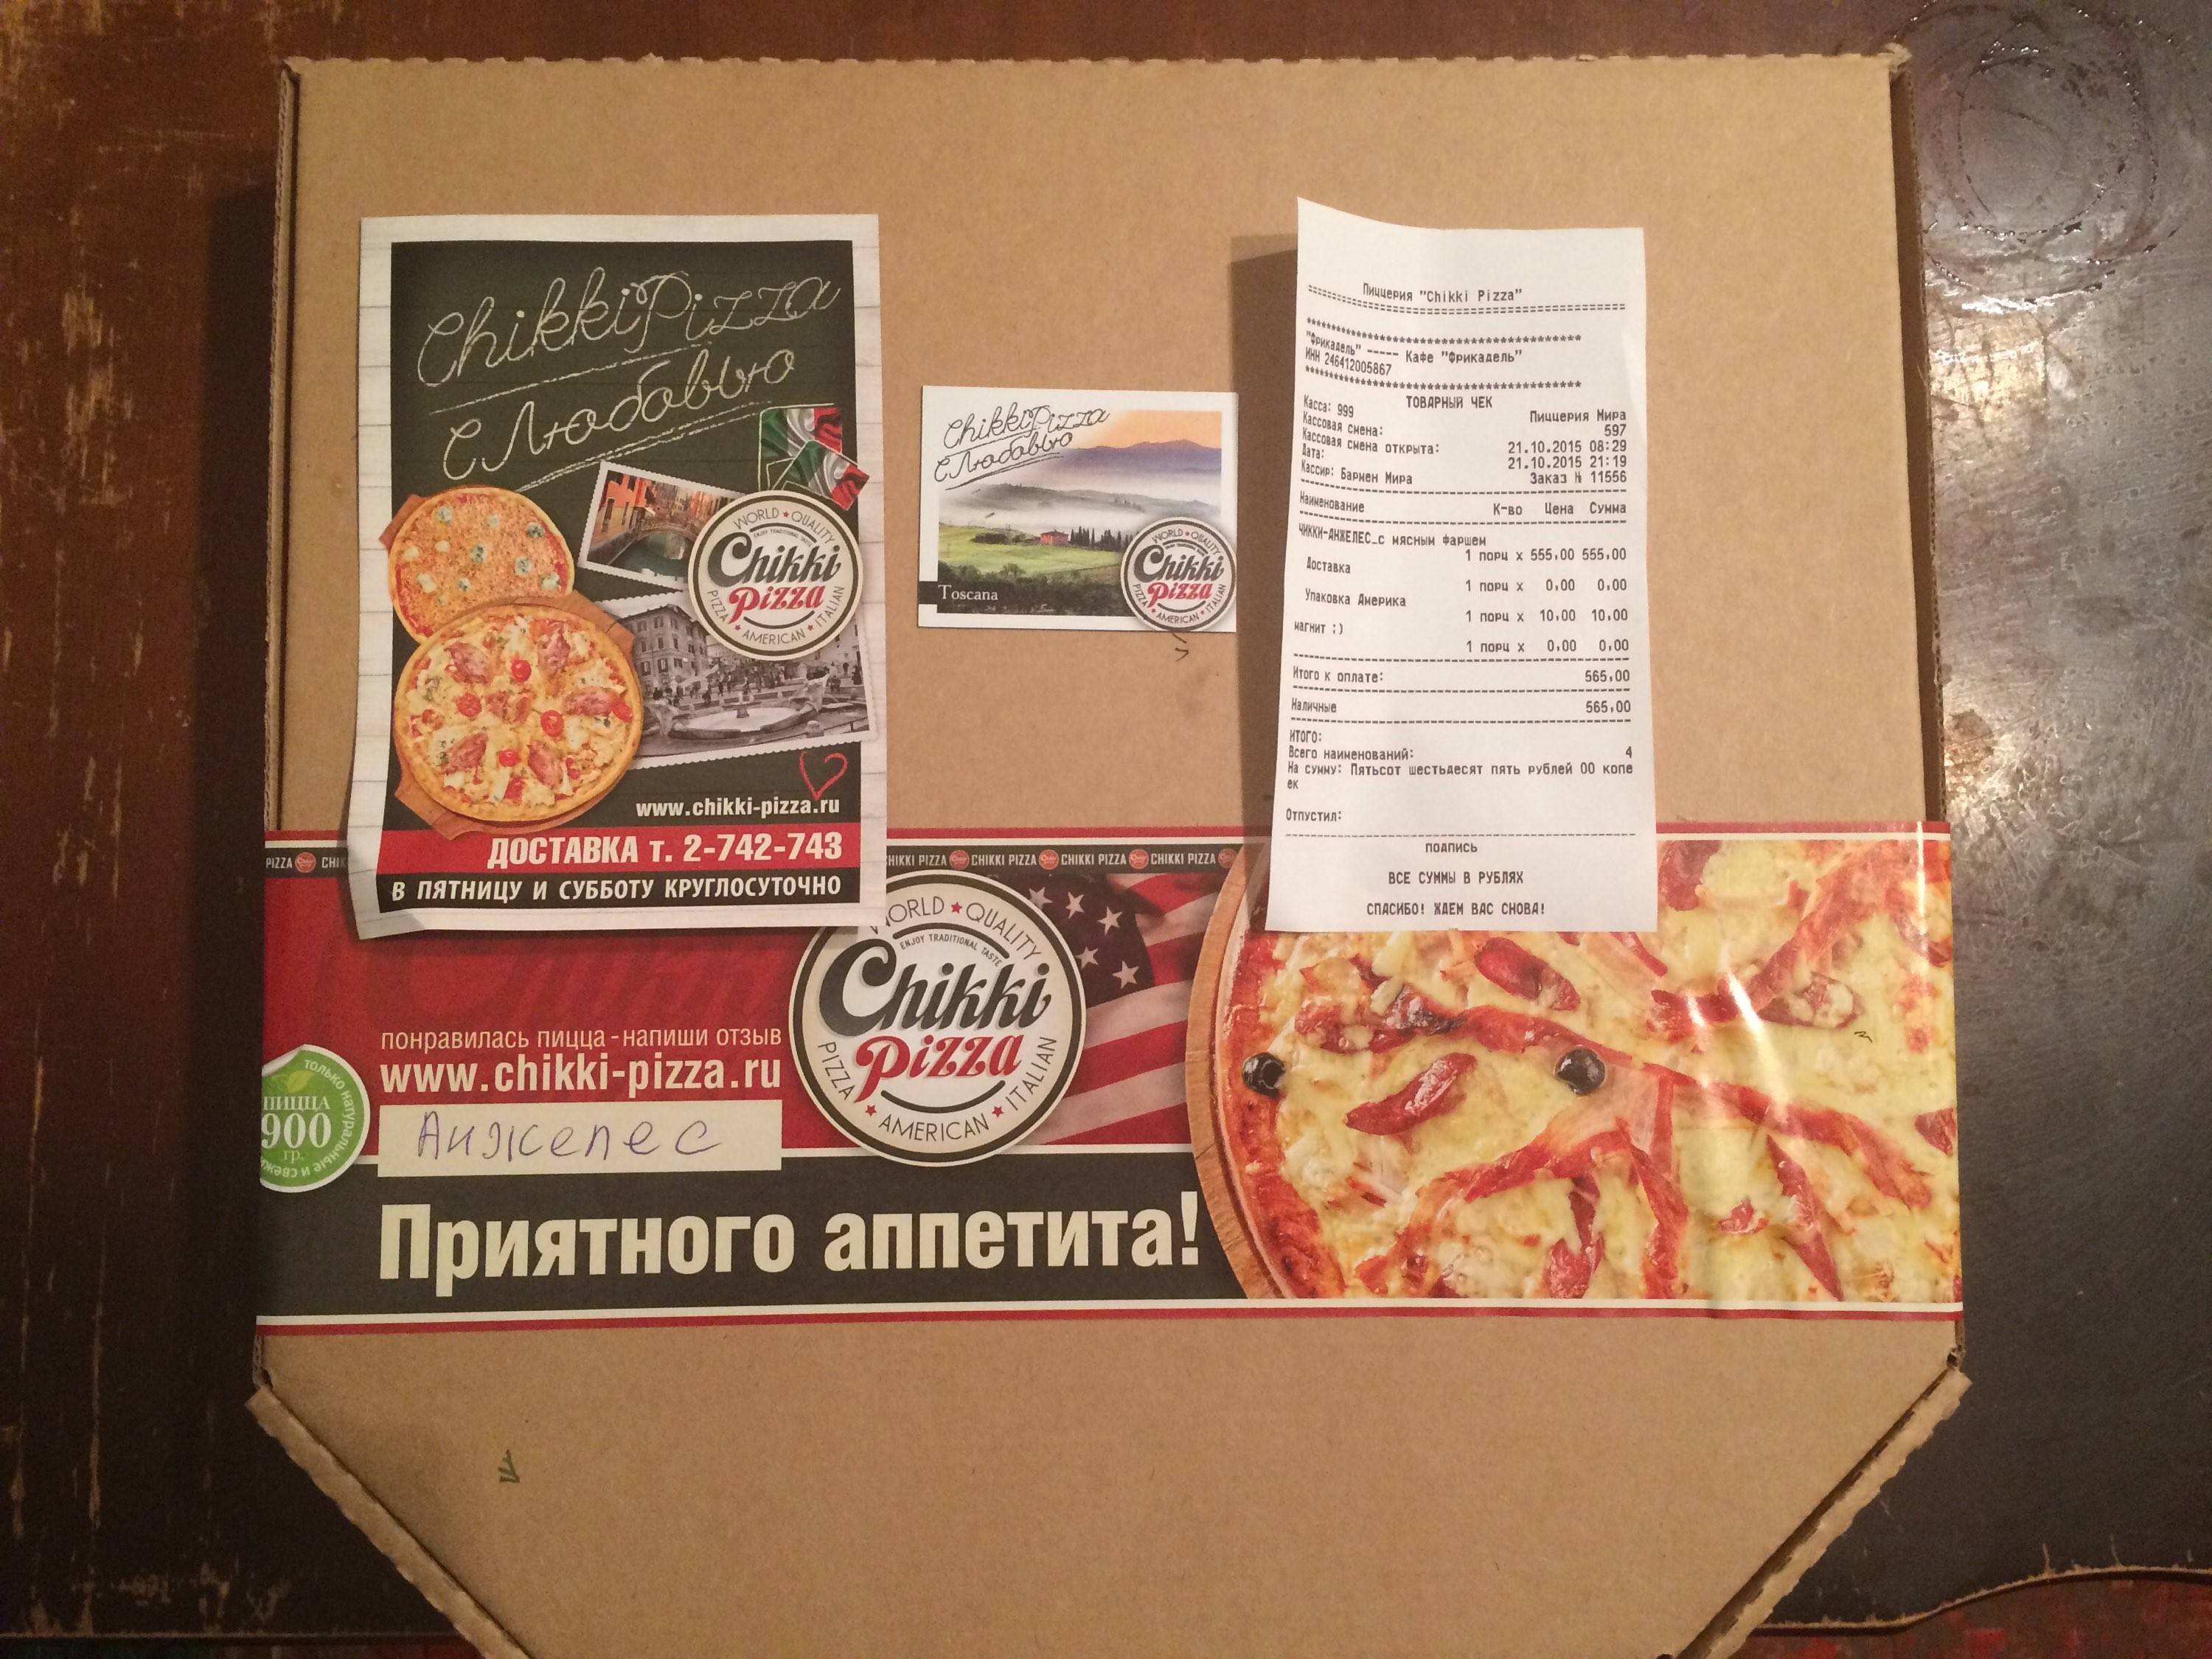 шинкаров михаил аркадьевич мир пиццы фото фото 16